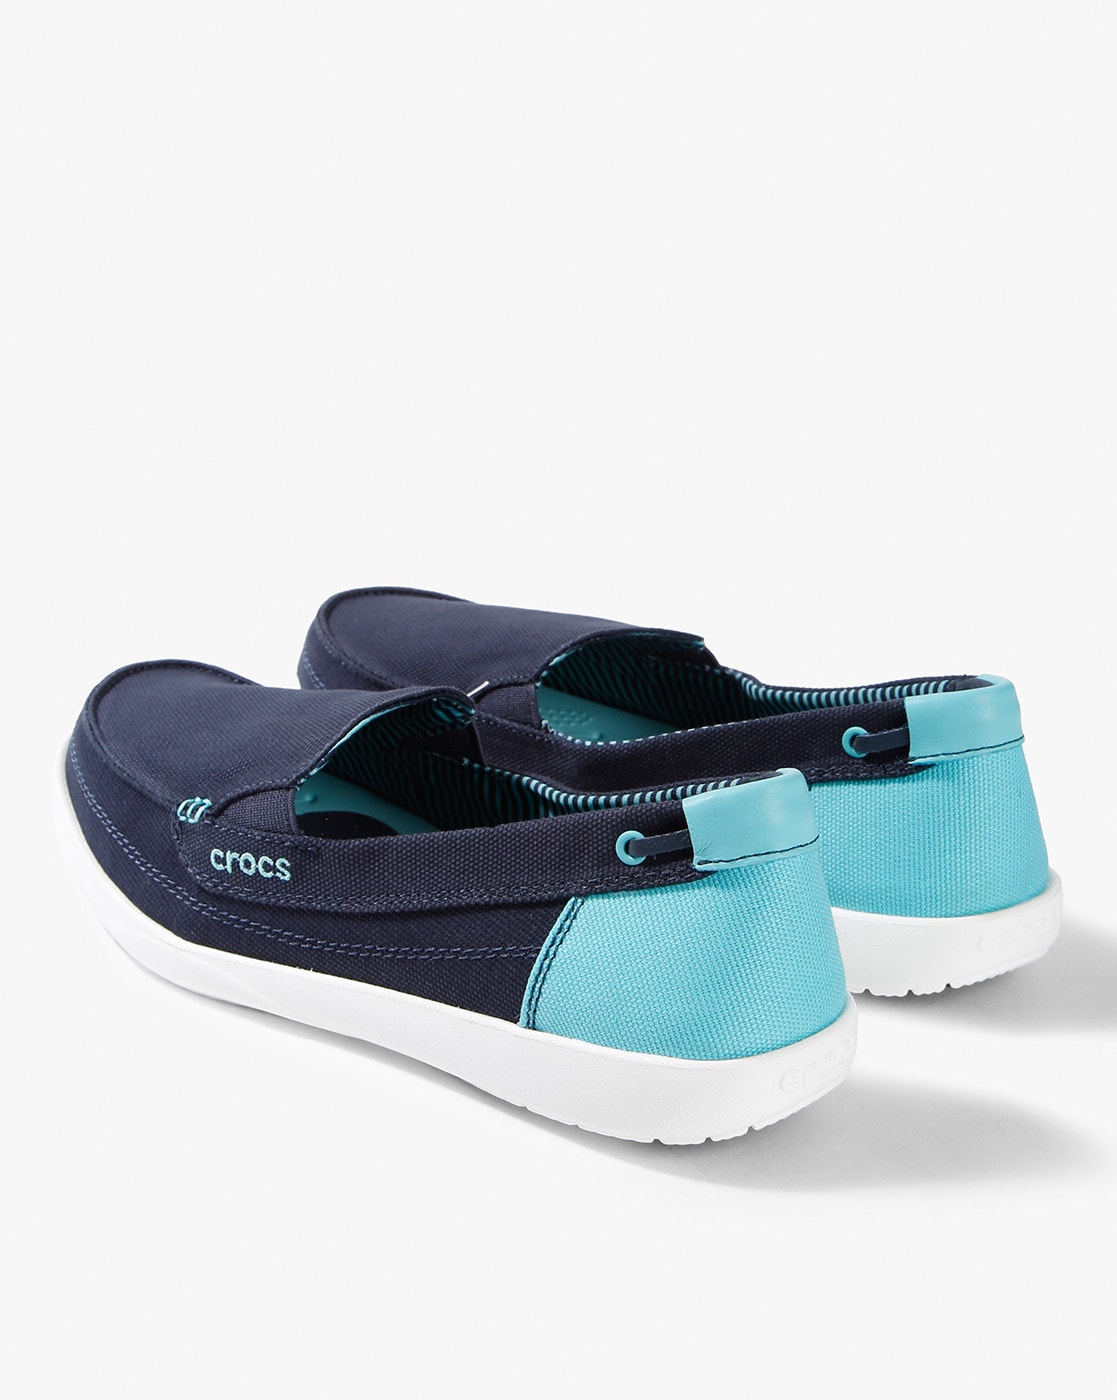 crocs shoes for ladies